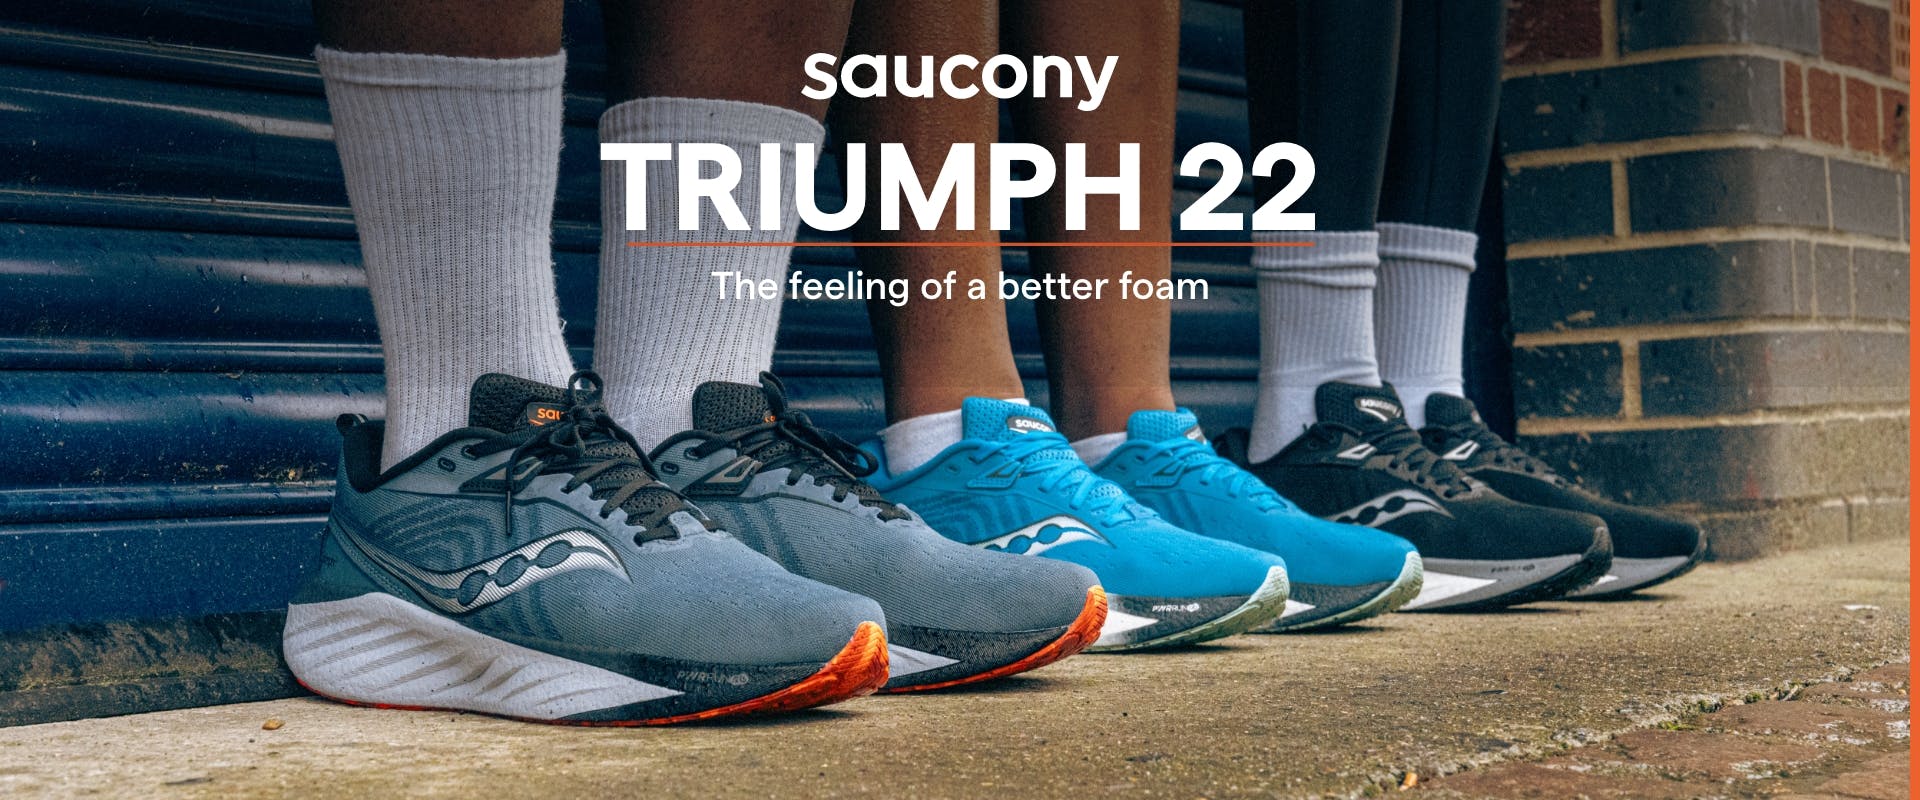 Saucony Triumph 22 